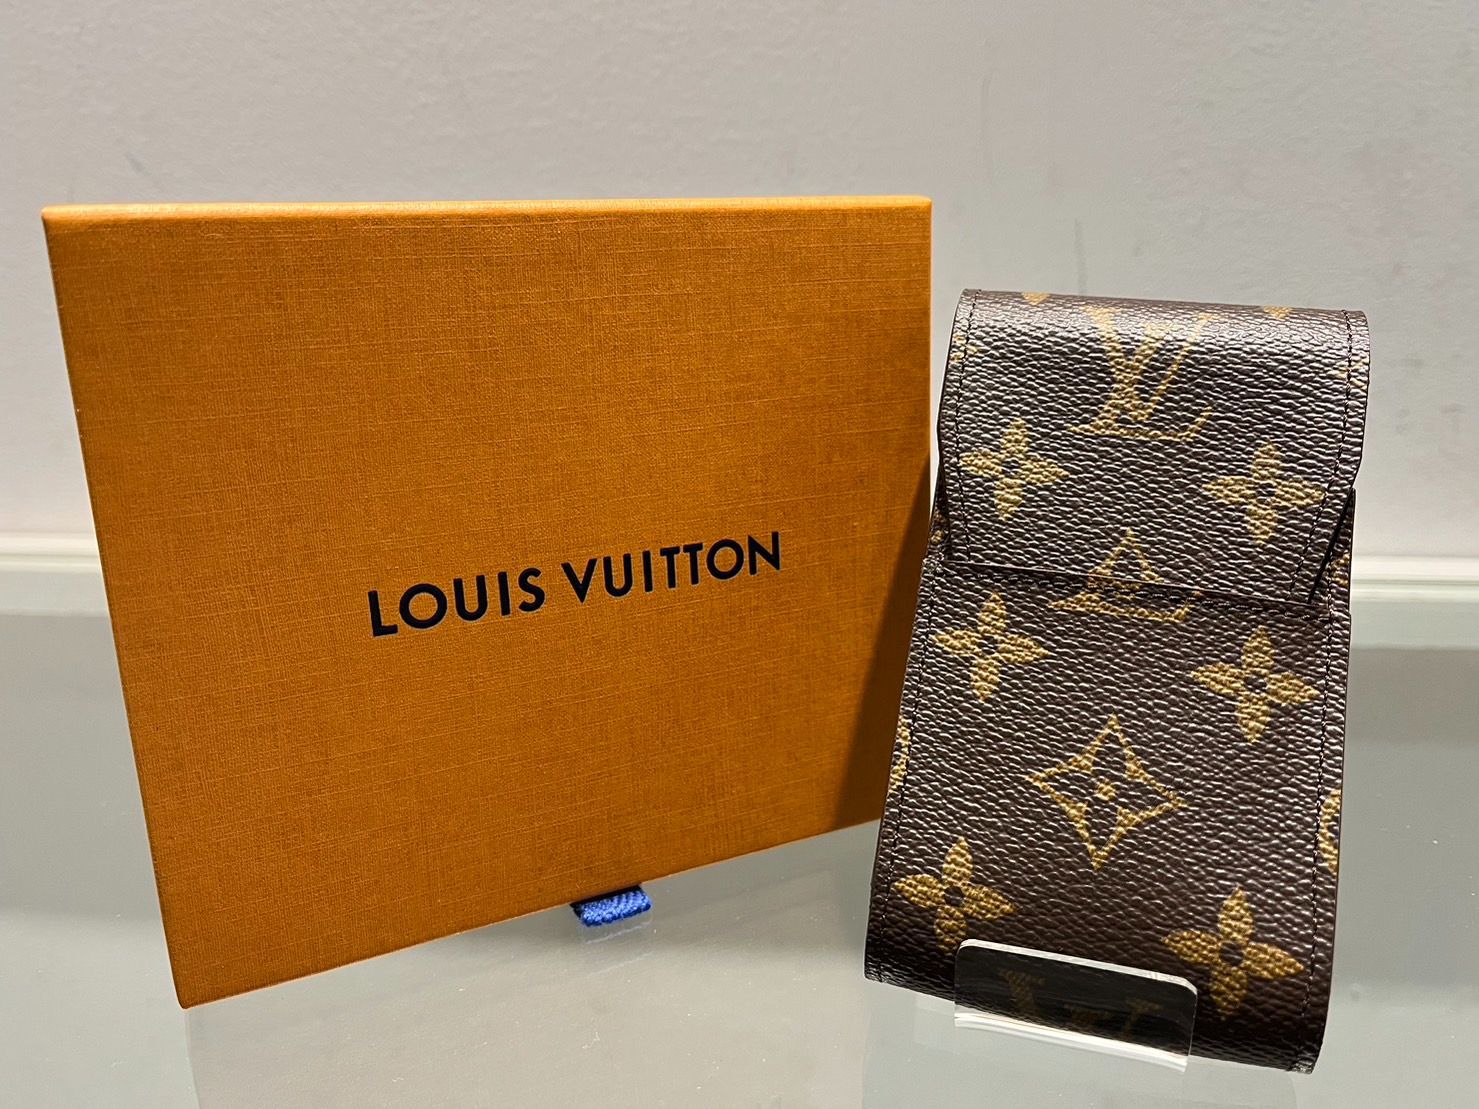 ルイ・ヴィトン Louis Vuitton エテュイ シガレット 煙草入れ 小物入れ